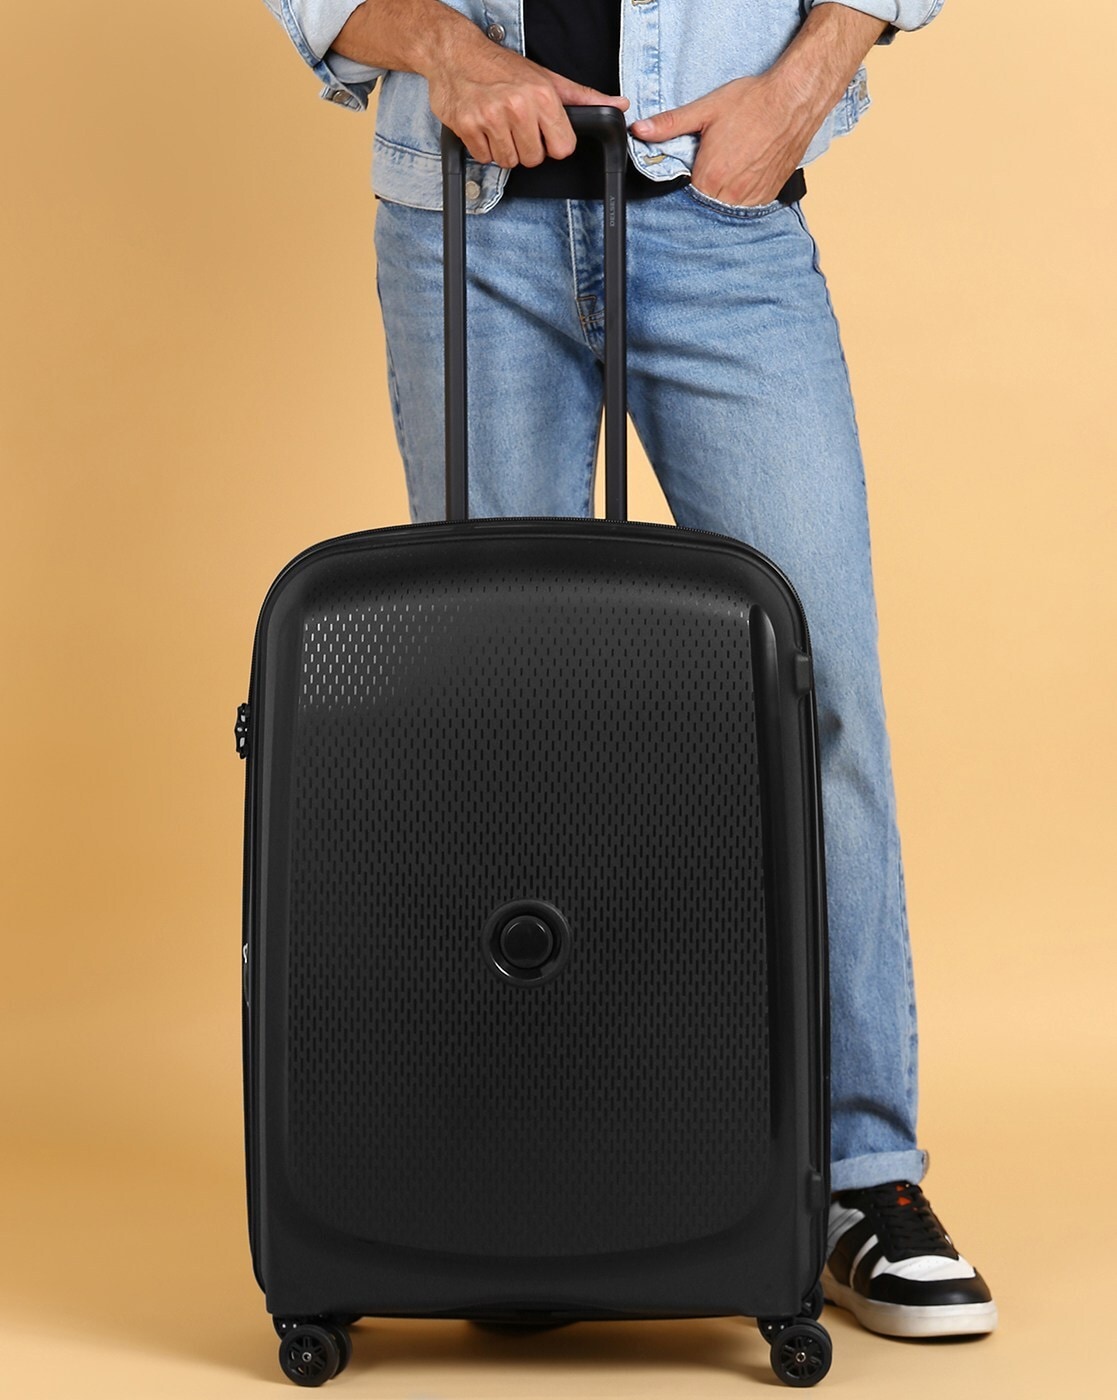 Amazon.com: Delsey Paris Luggage: Garment Bags